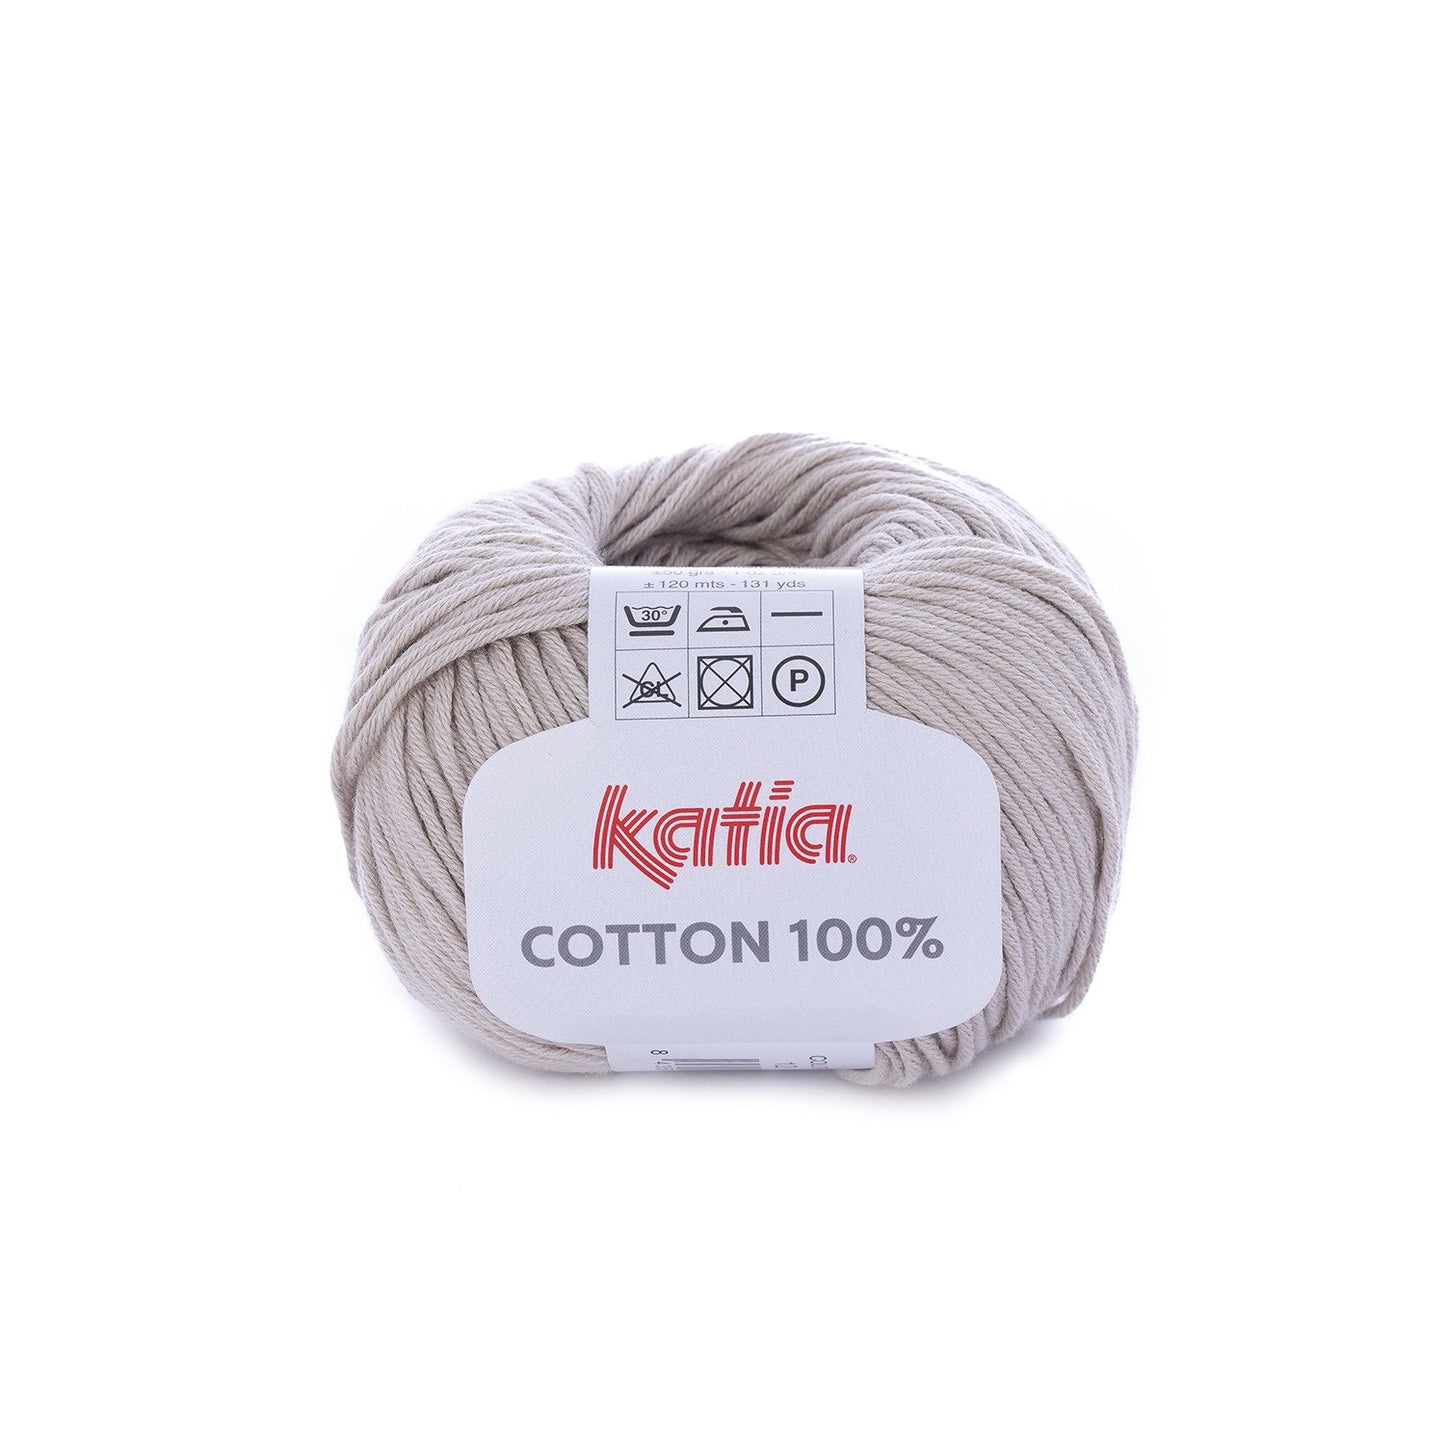 Cotton 100% - 12 beige.